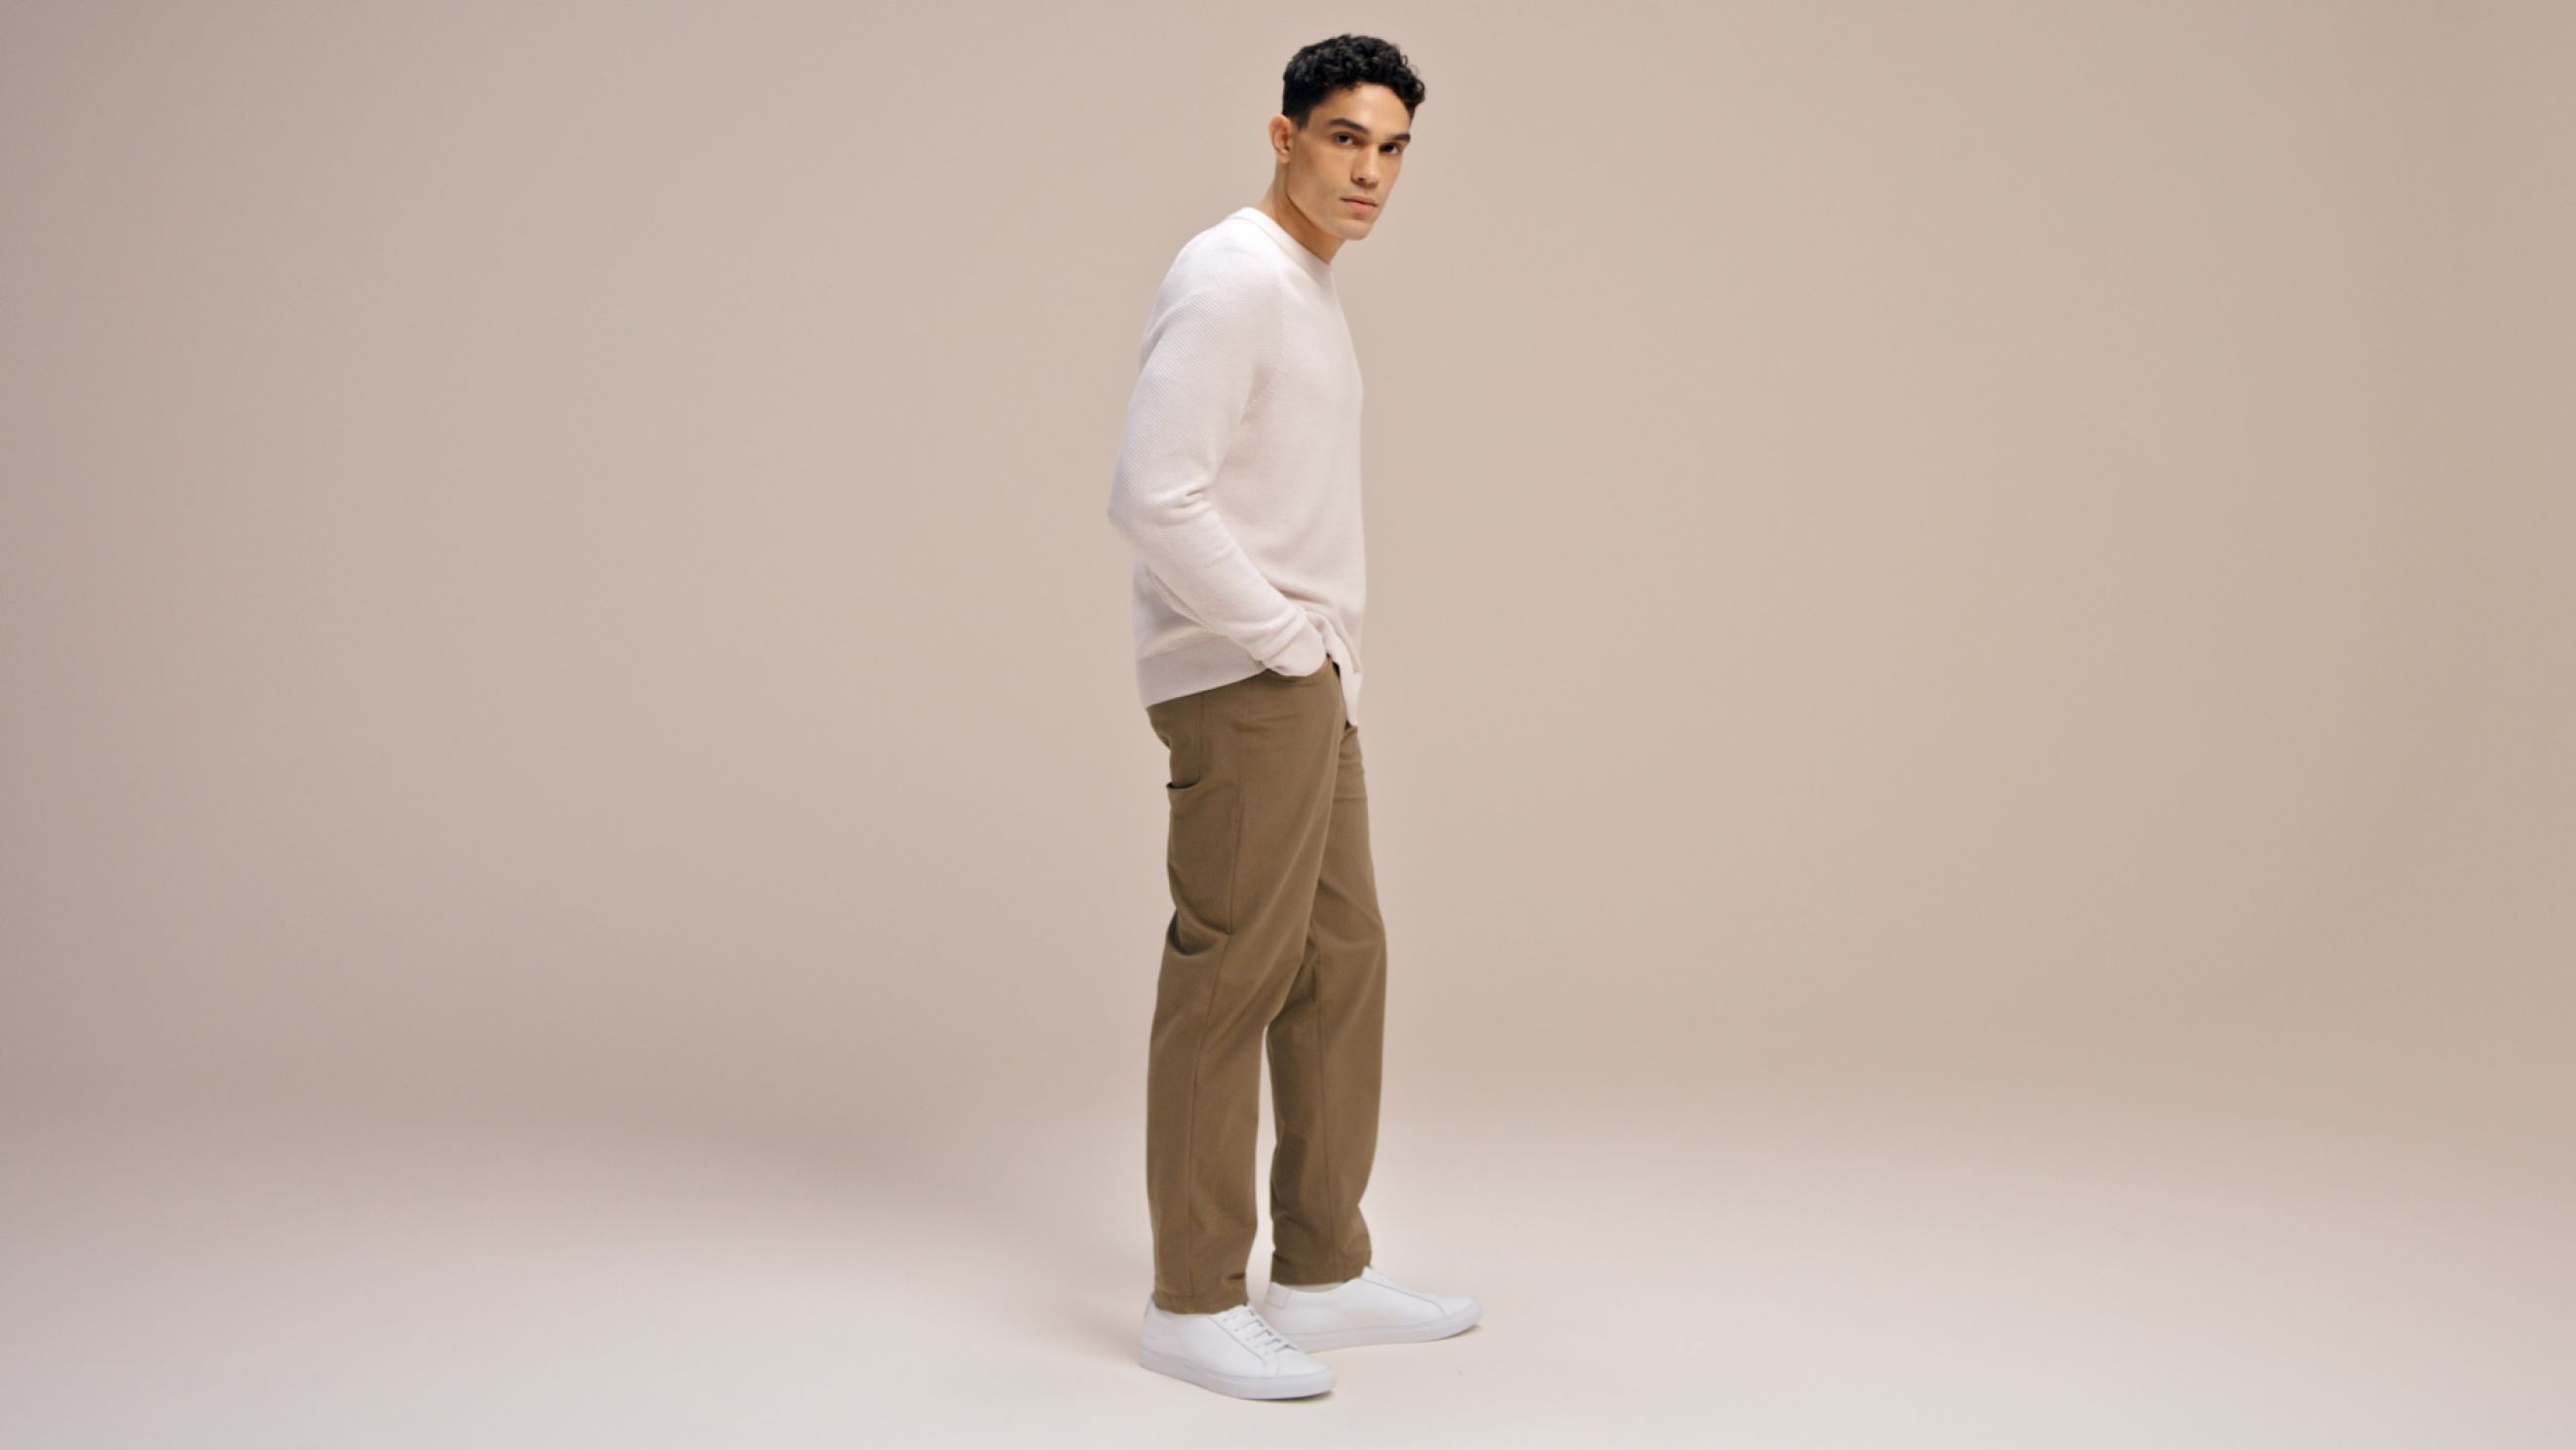 ABC Slim-Fit 5 Pocket Pant 30L *Warpstreme, Men's Trousers, lululemon